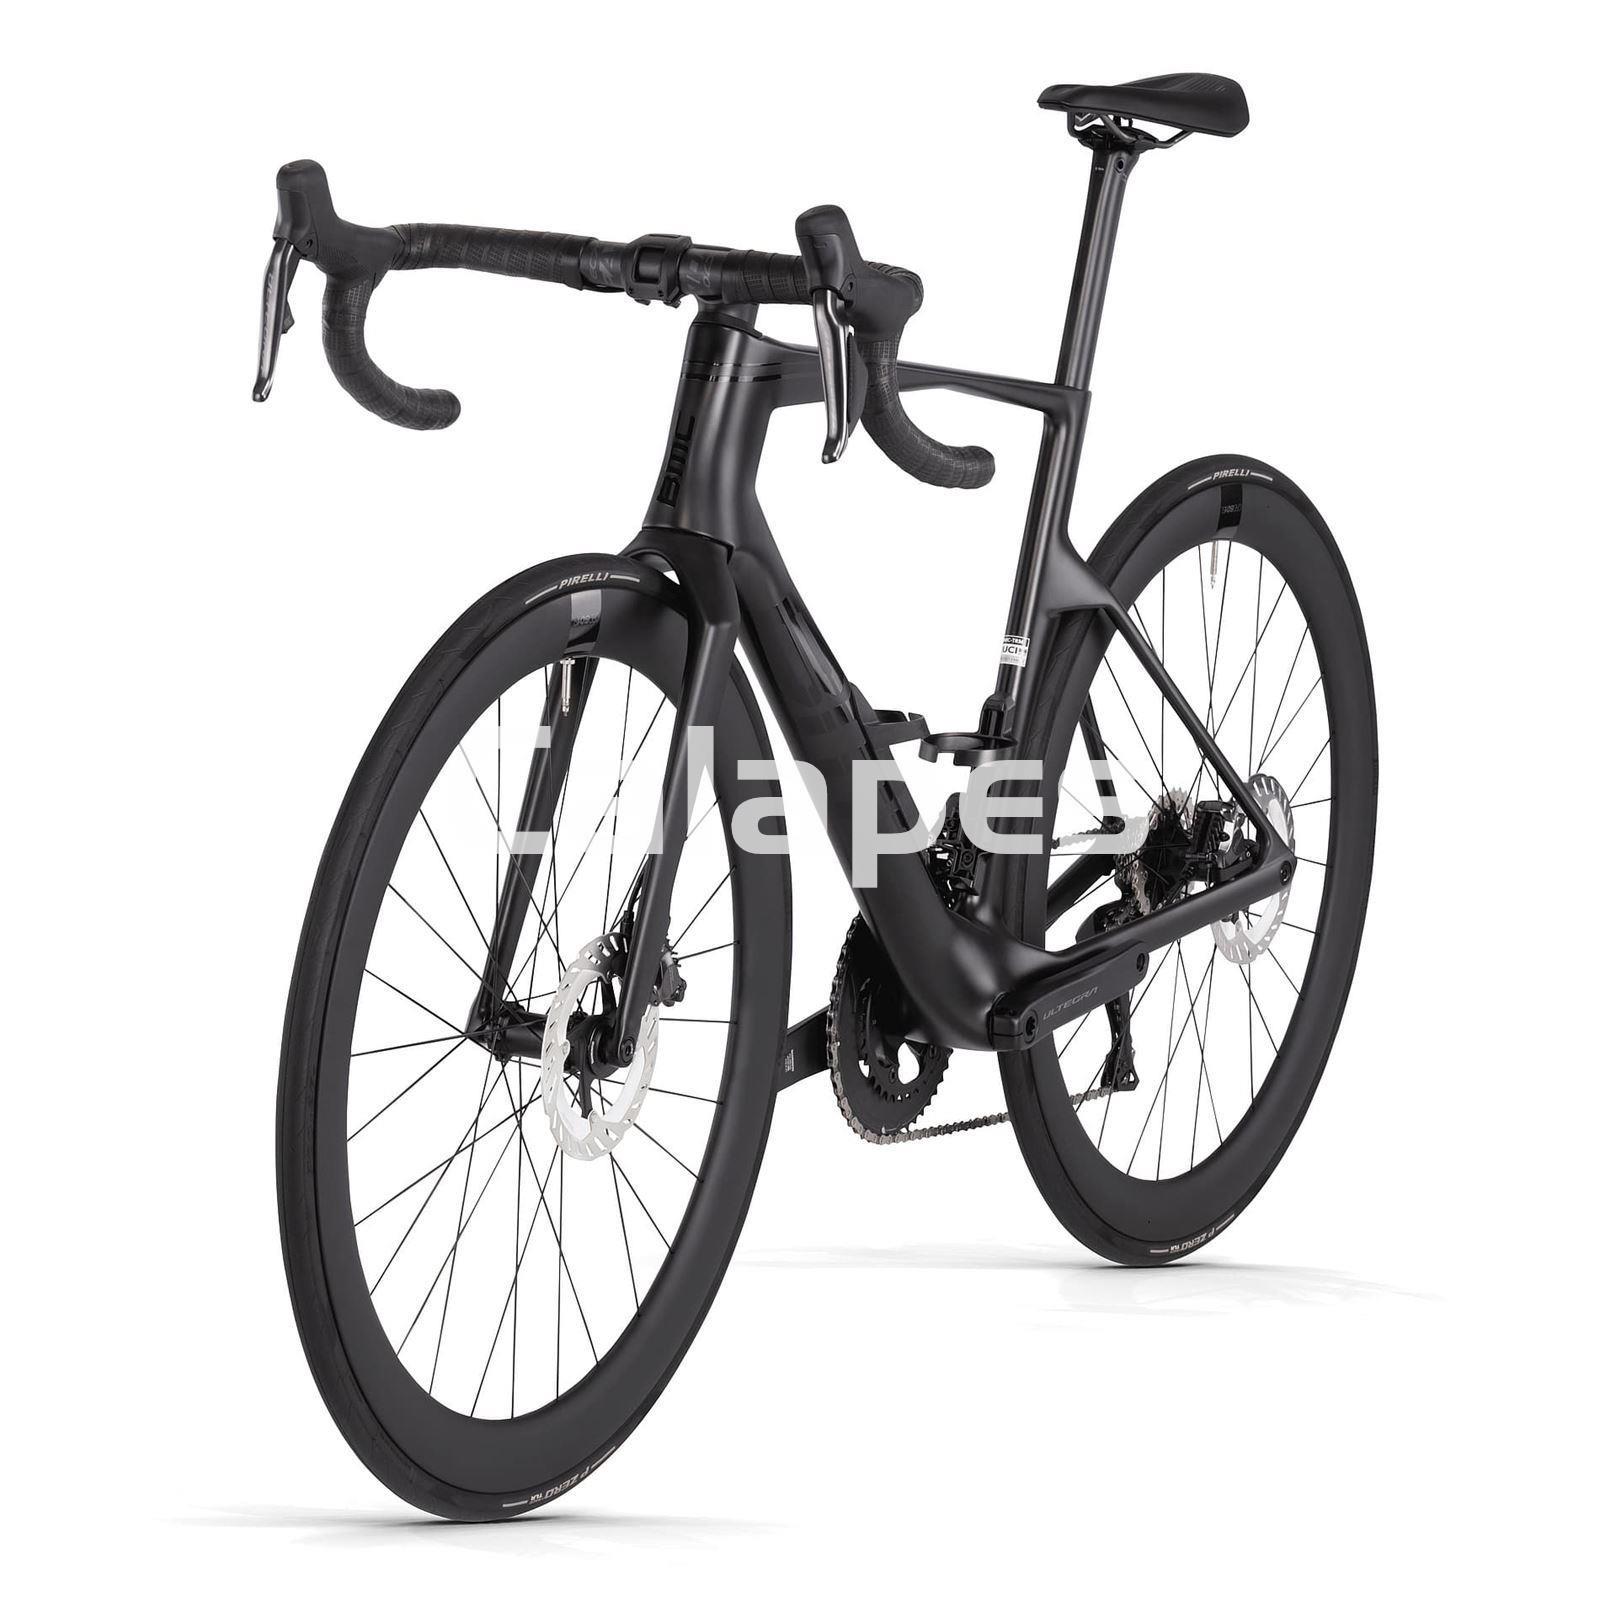 Bicicleta BMC Teammachine R 01 FOUR Shimano Ultegra Di2 12v - Imagen 3